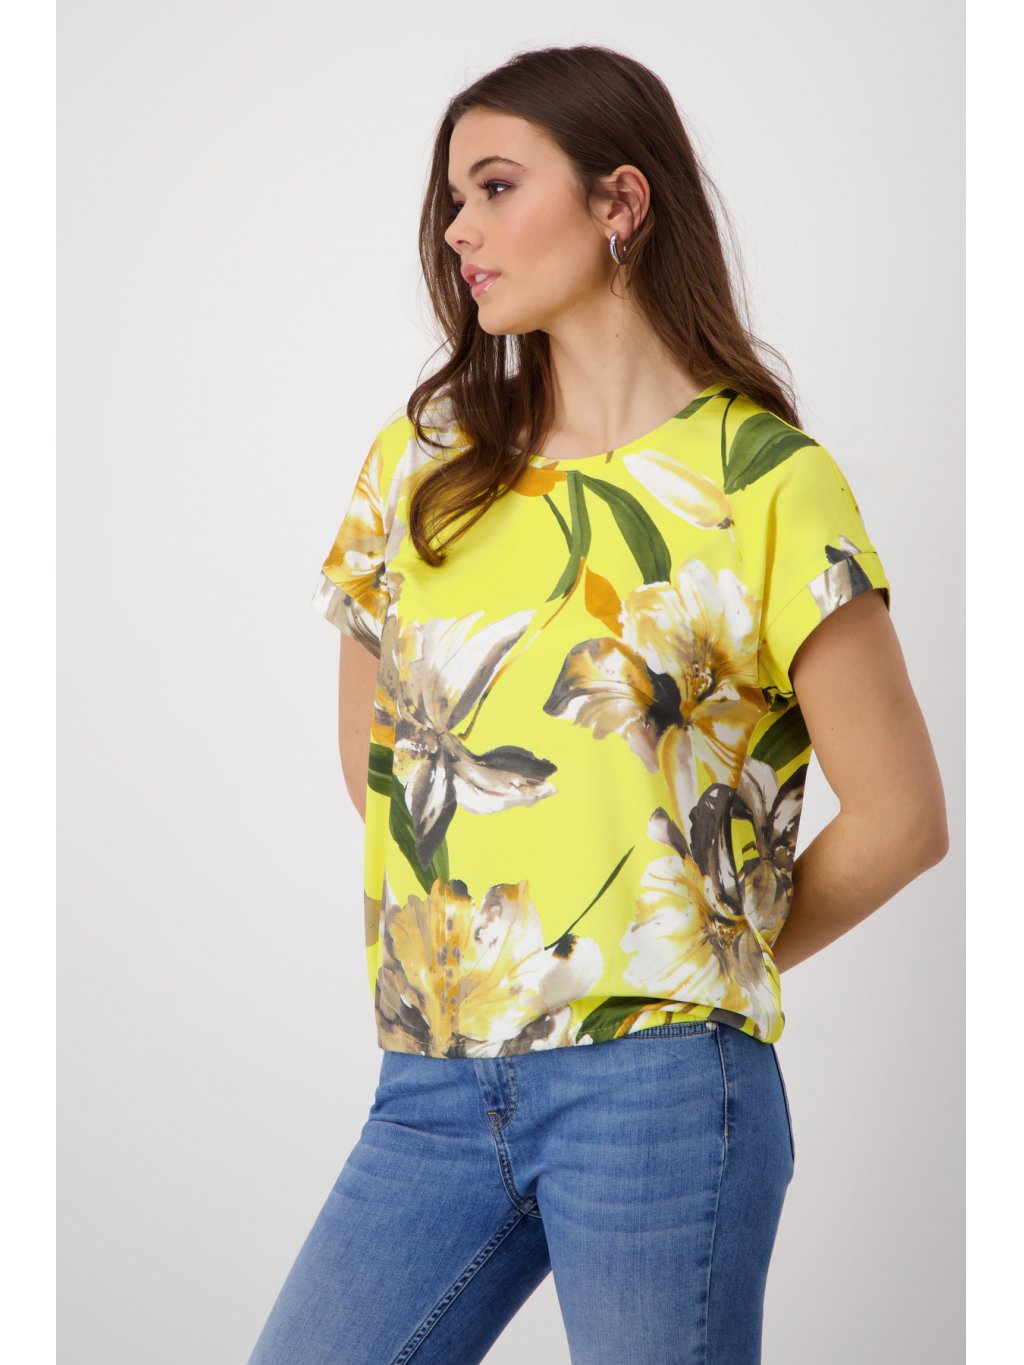 Tričko Monari 8537 žluté s květy v béžové